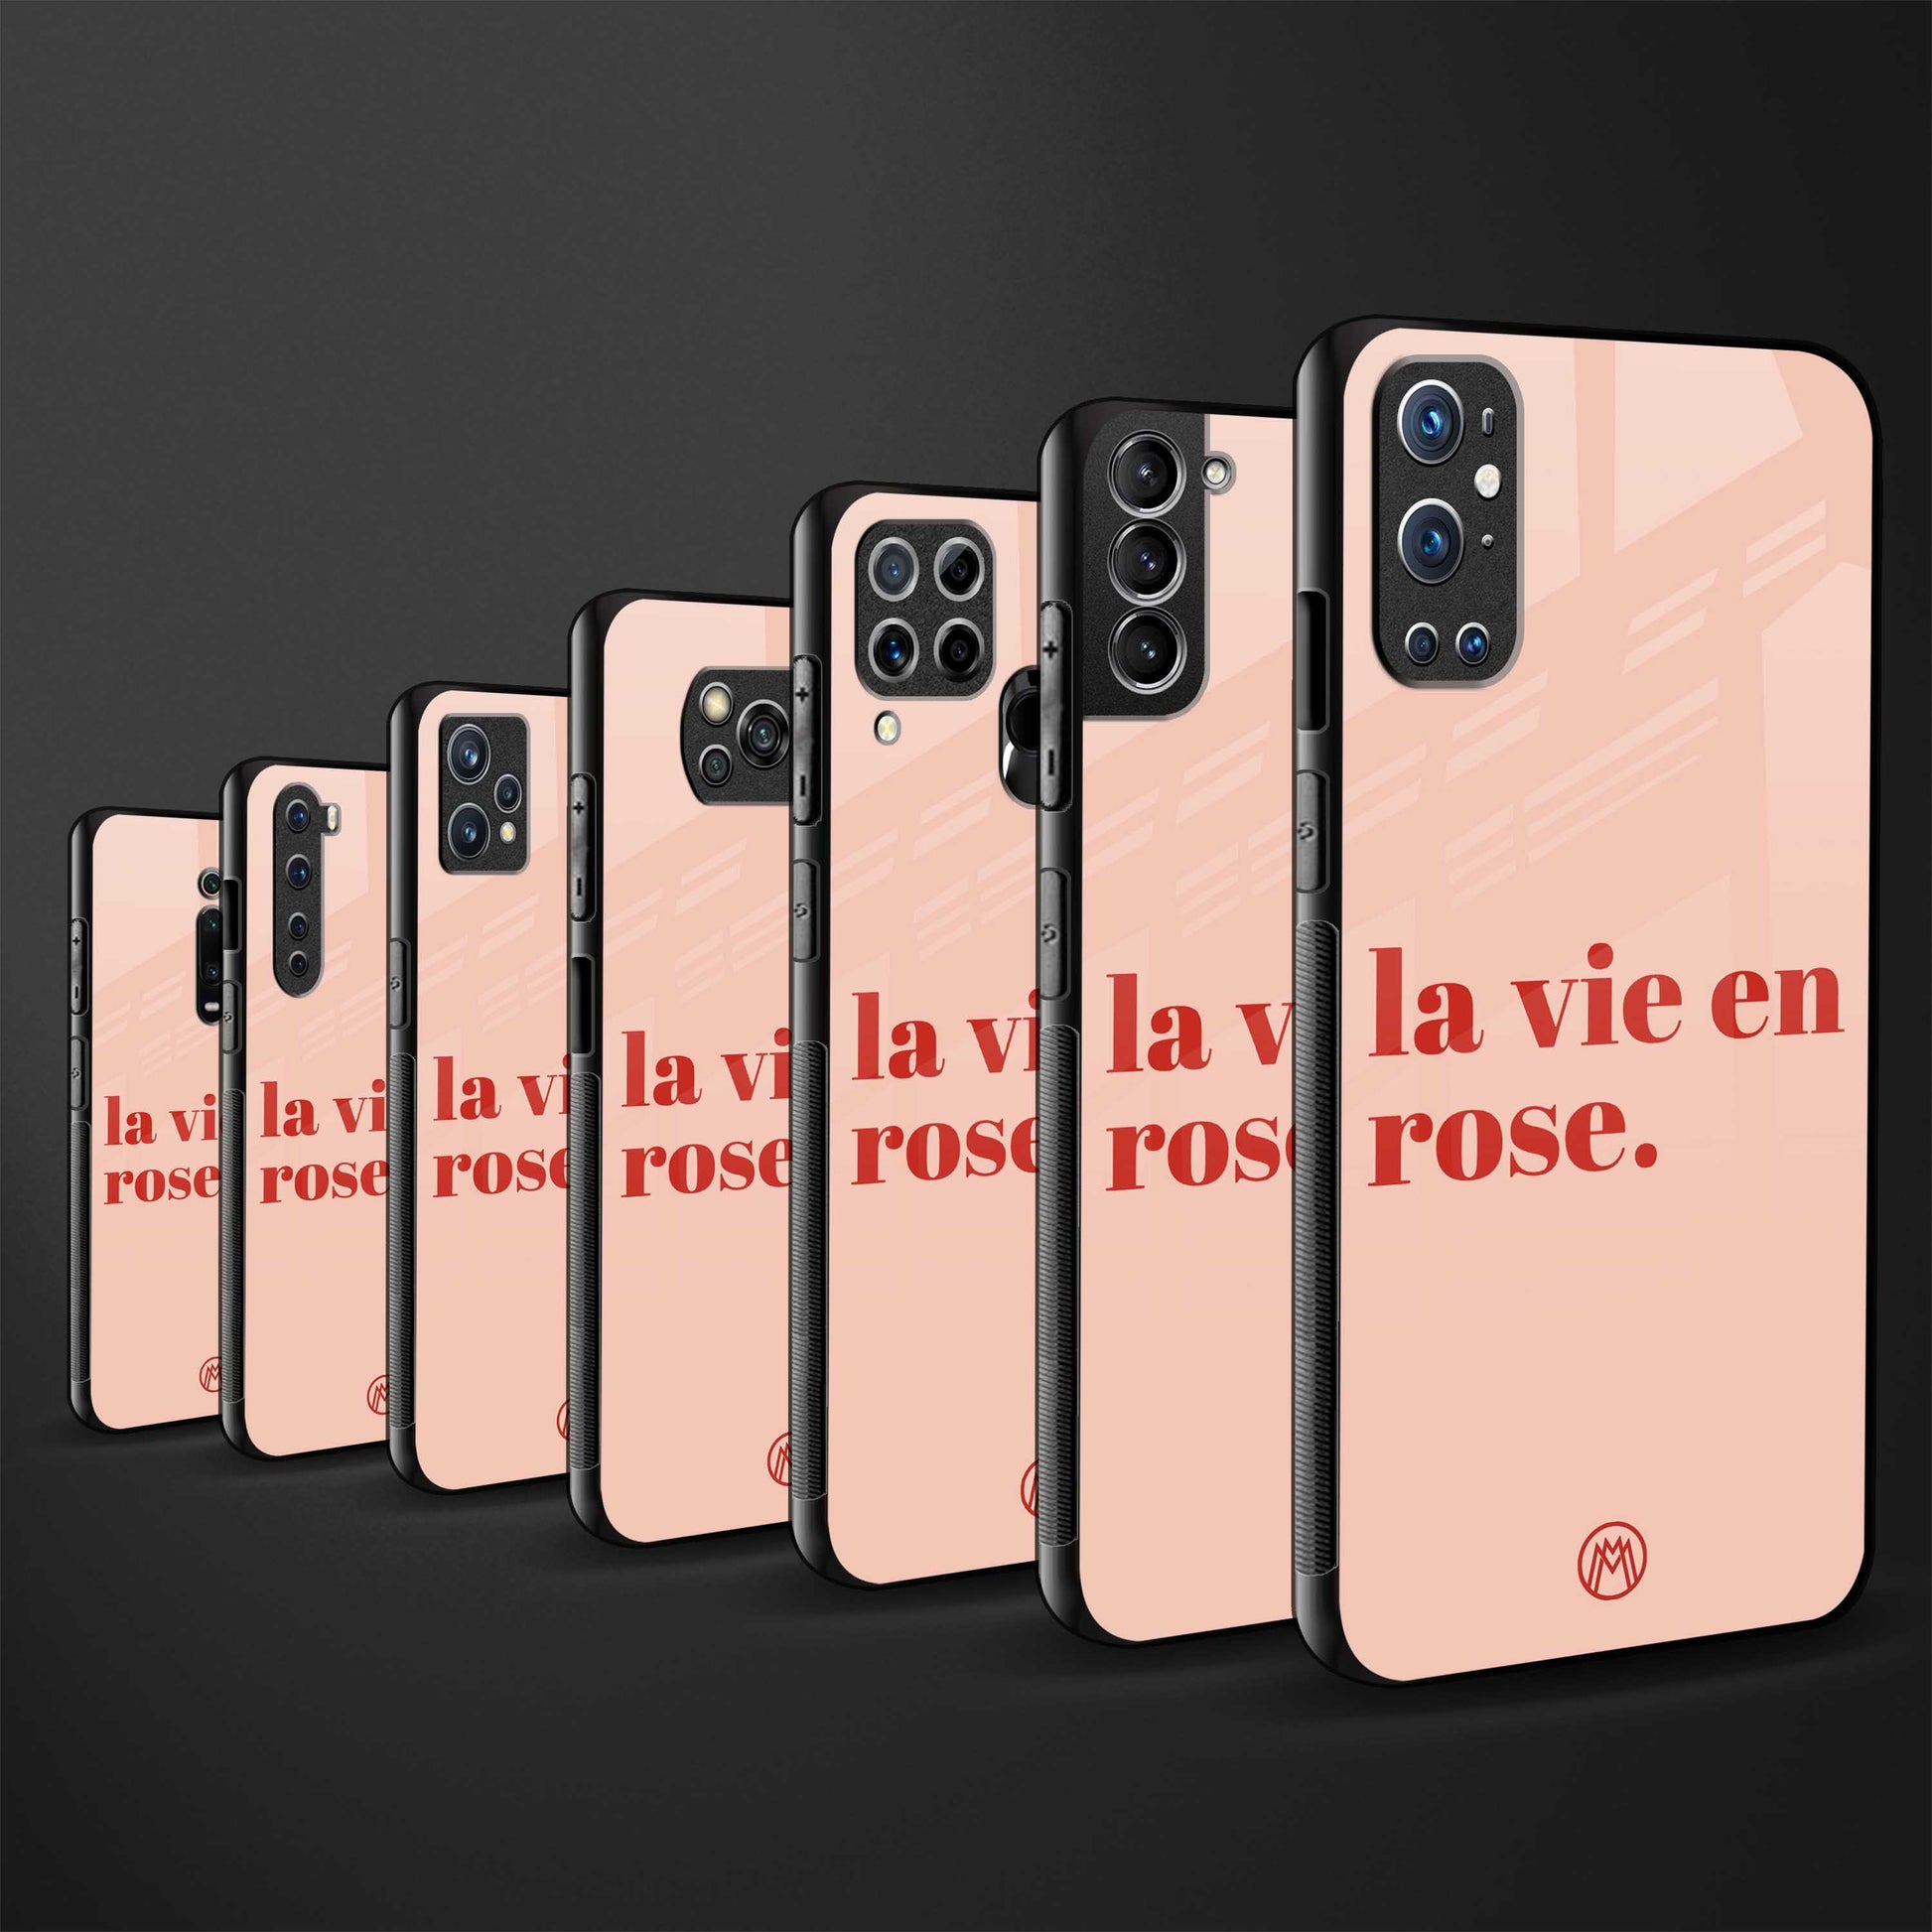 la vie en rose quote glass case for iphone 6s image-3